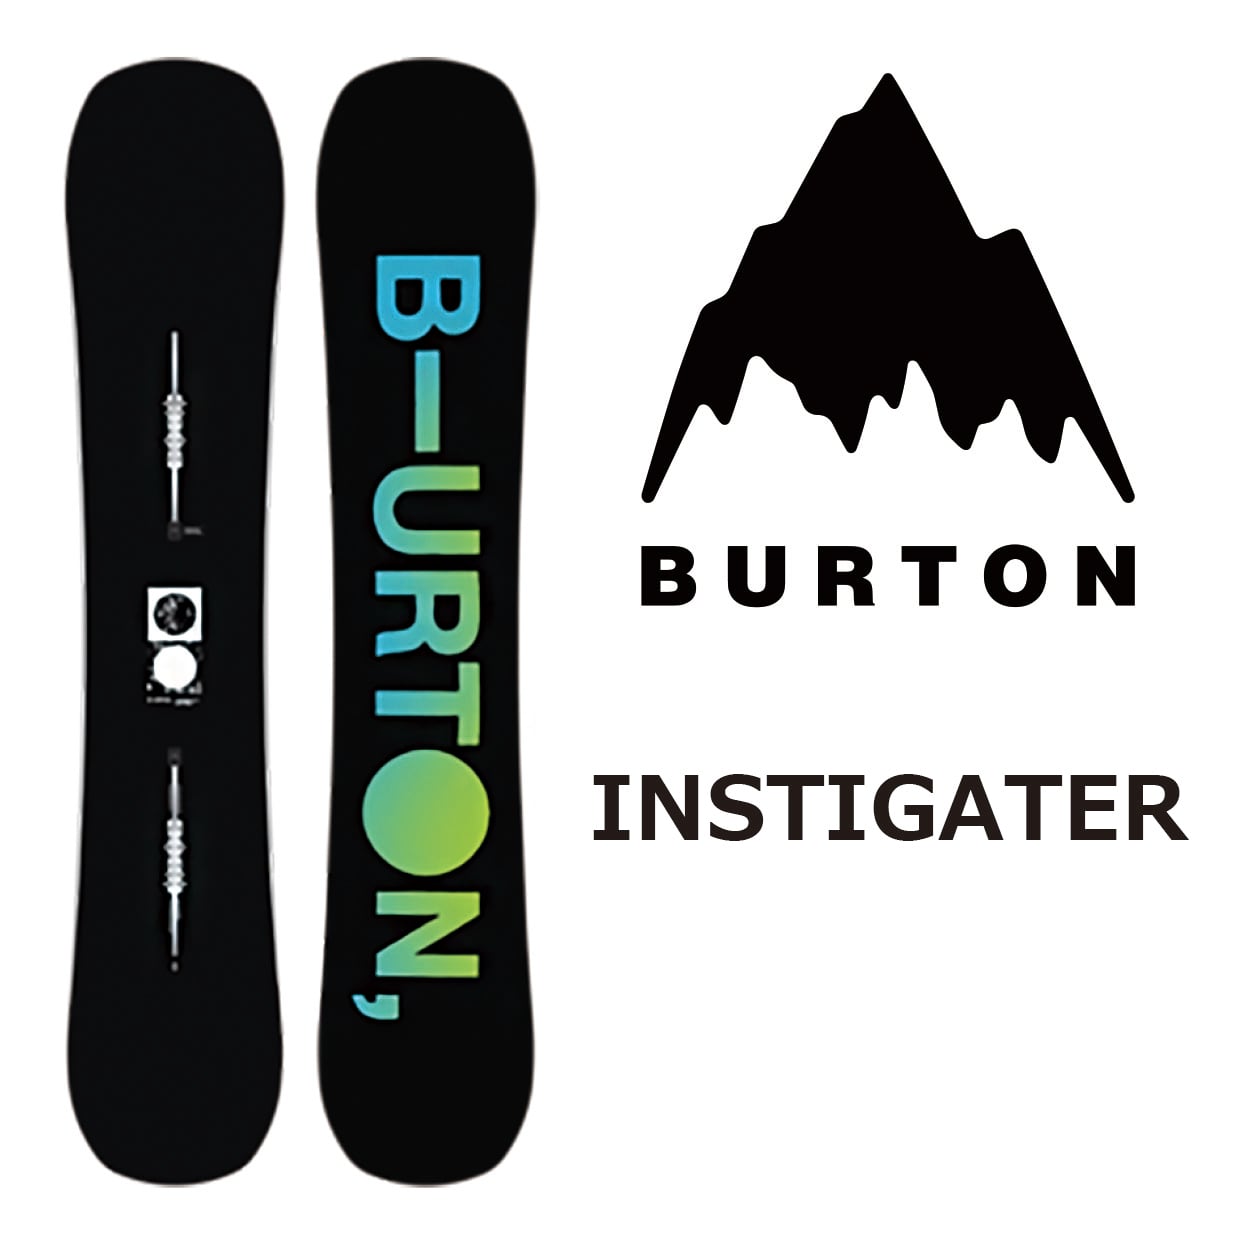 20-21 Burton Instigator 150cm